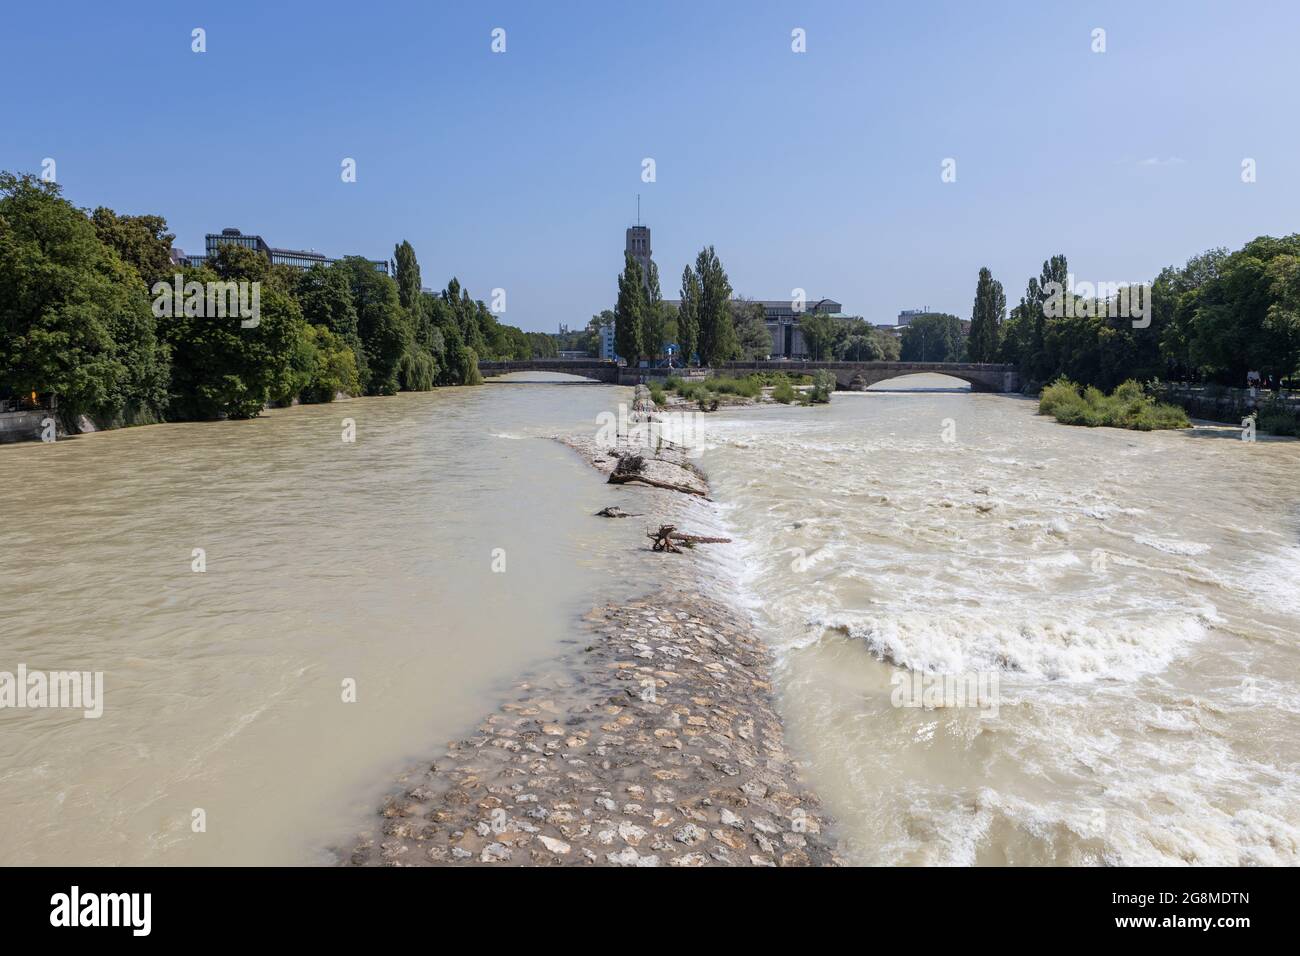 Inondation à la rivière isar à Munich au pont appelé Corneliusbruecke avec le 'Musée des Deutsches' en arrière-plan. Cette image prise le 21 juillet 2021 Banque D'Images